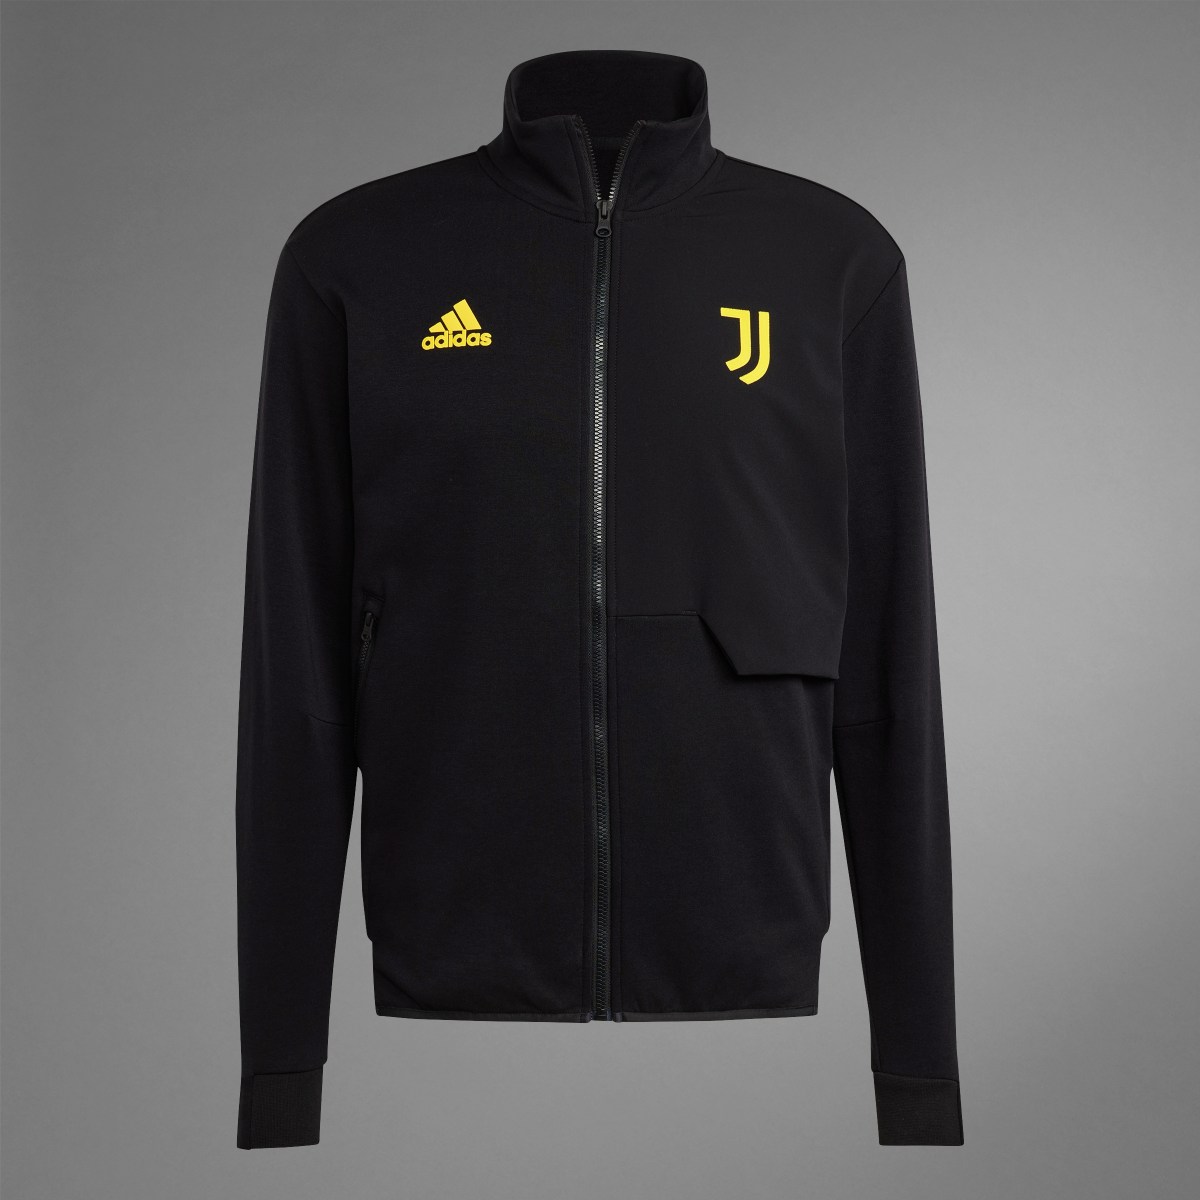 Adidas Juventus Anthem Jacket. 9